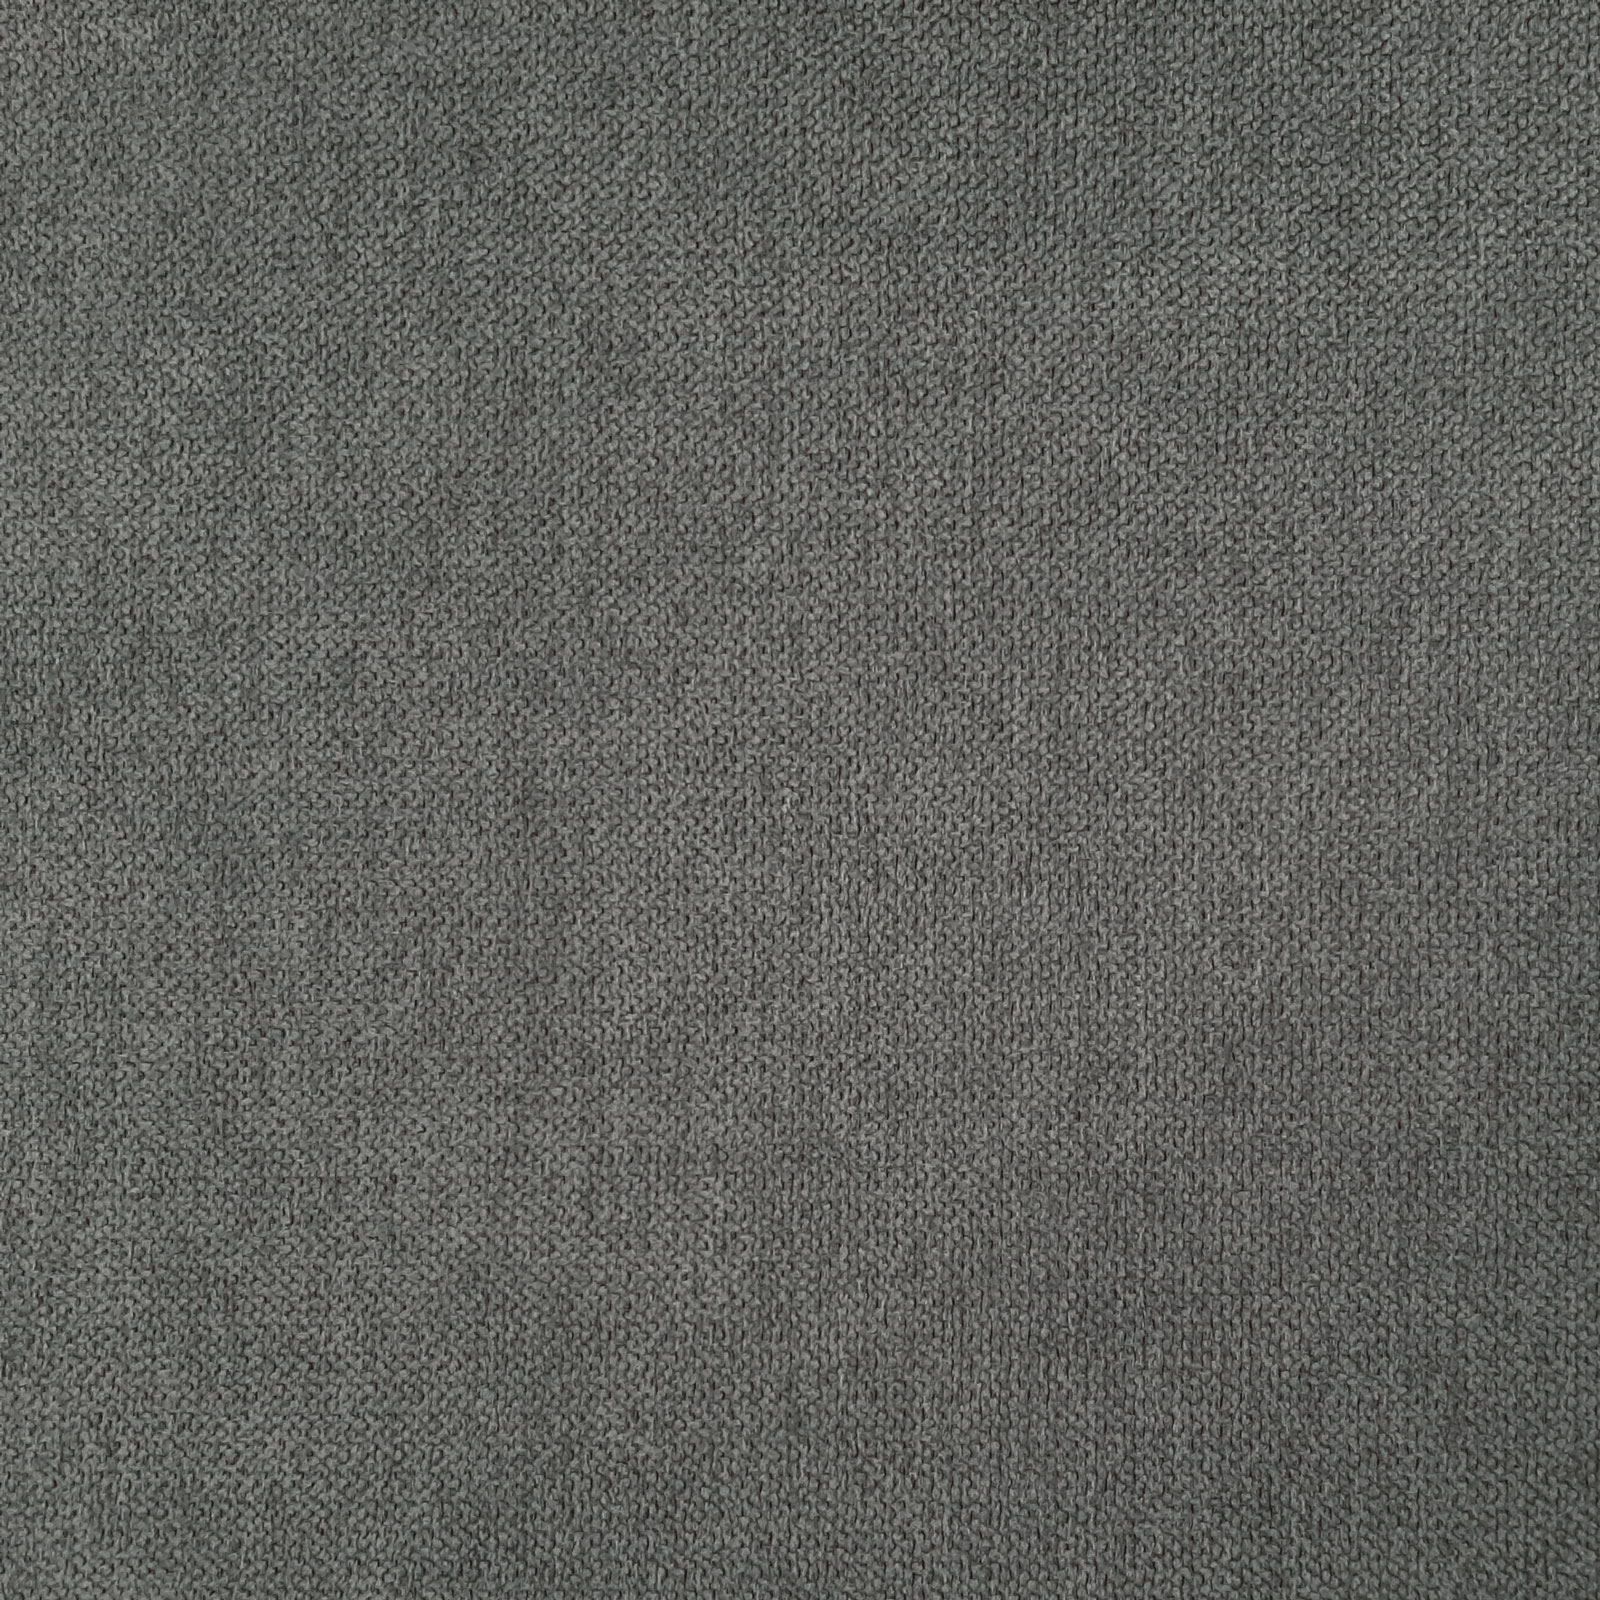 Deluxe - tessuto di rivestimento Oeko-Tex - Oscuro grigio